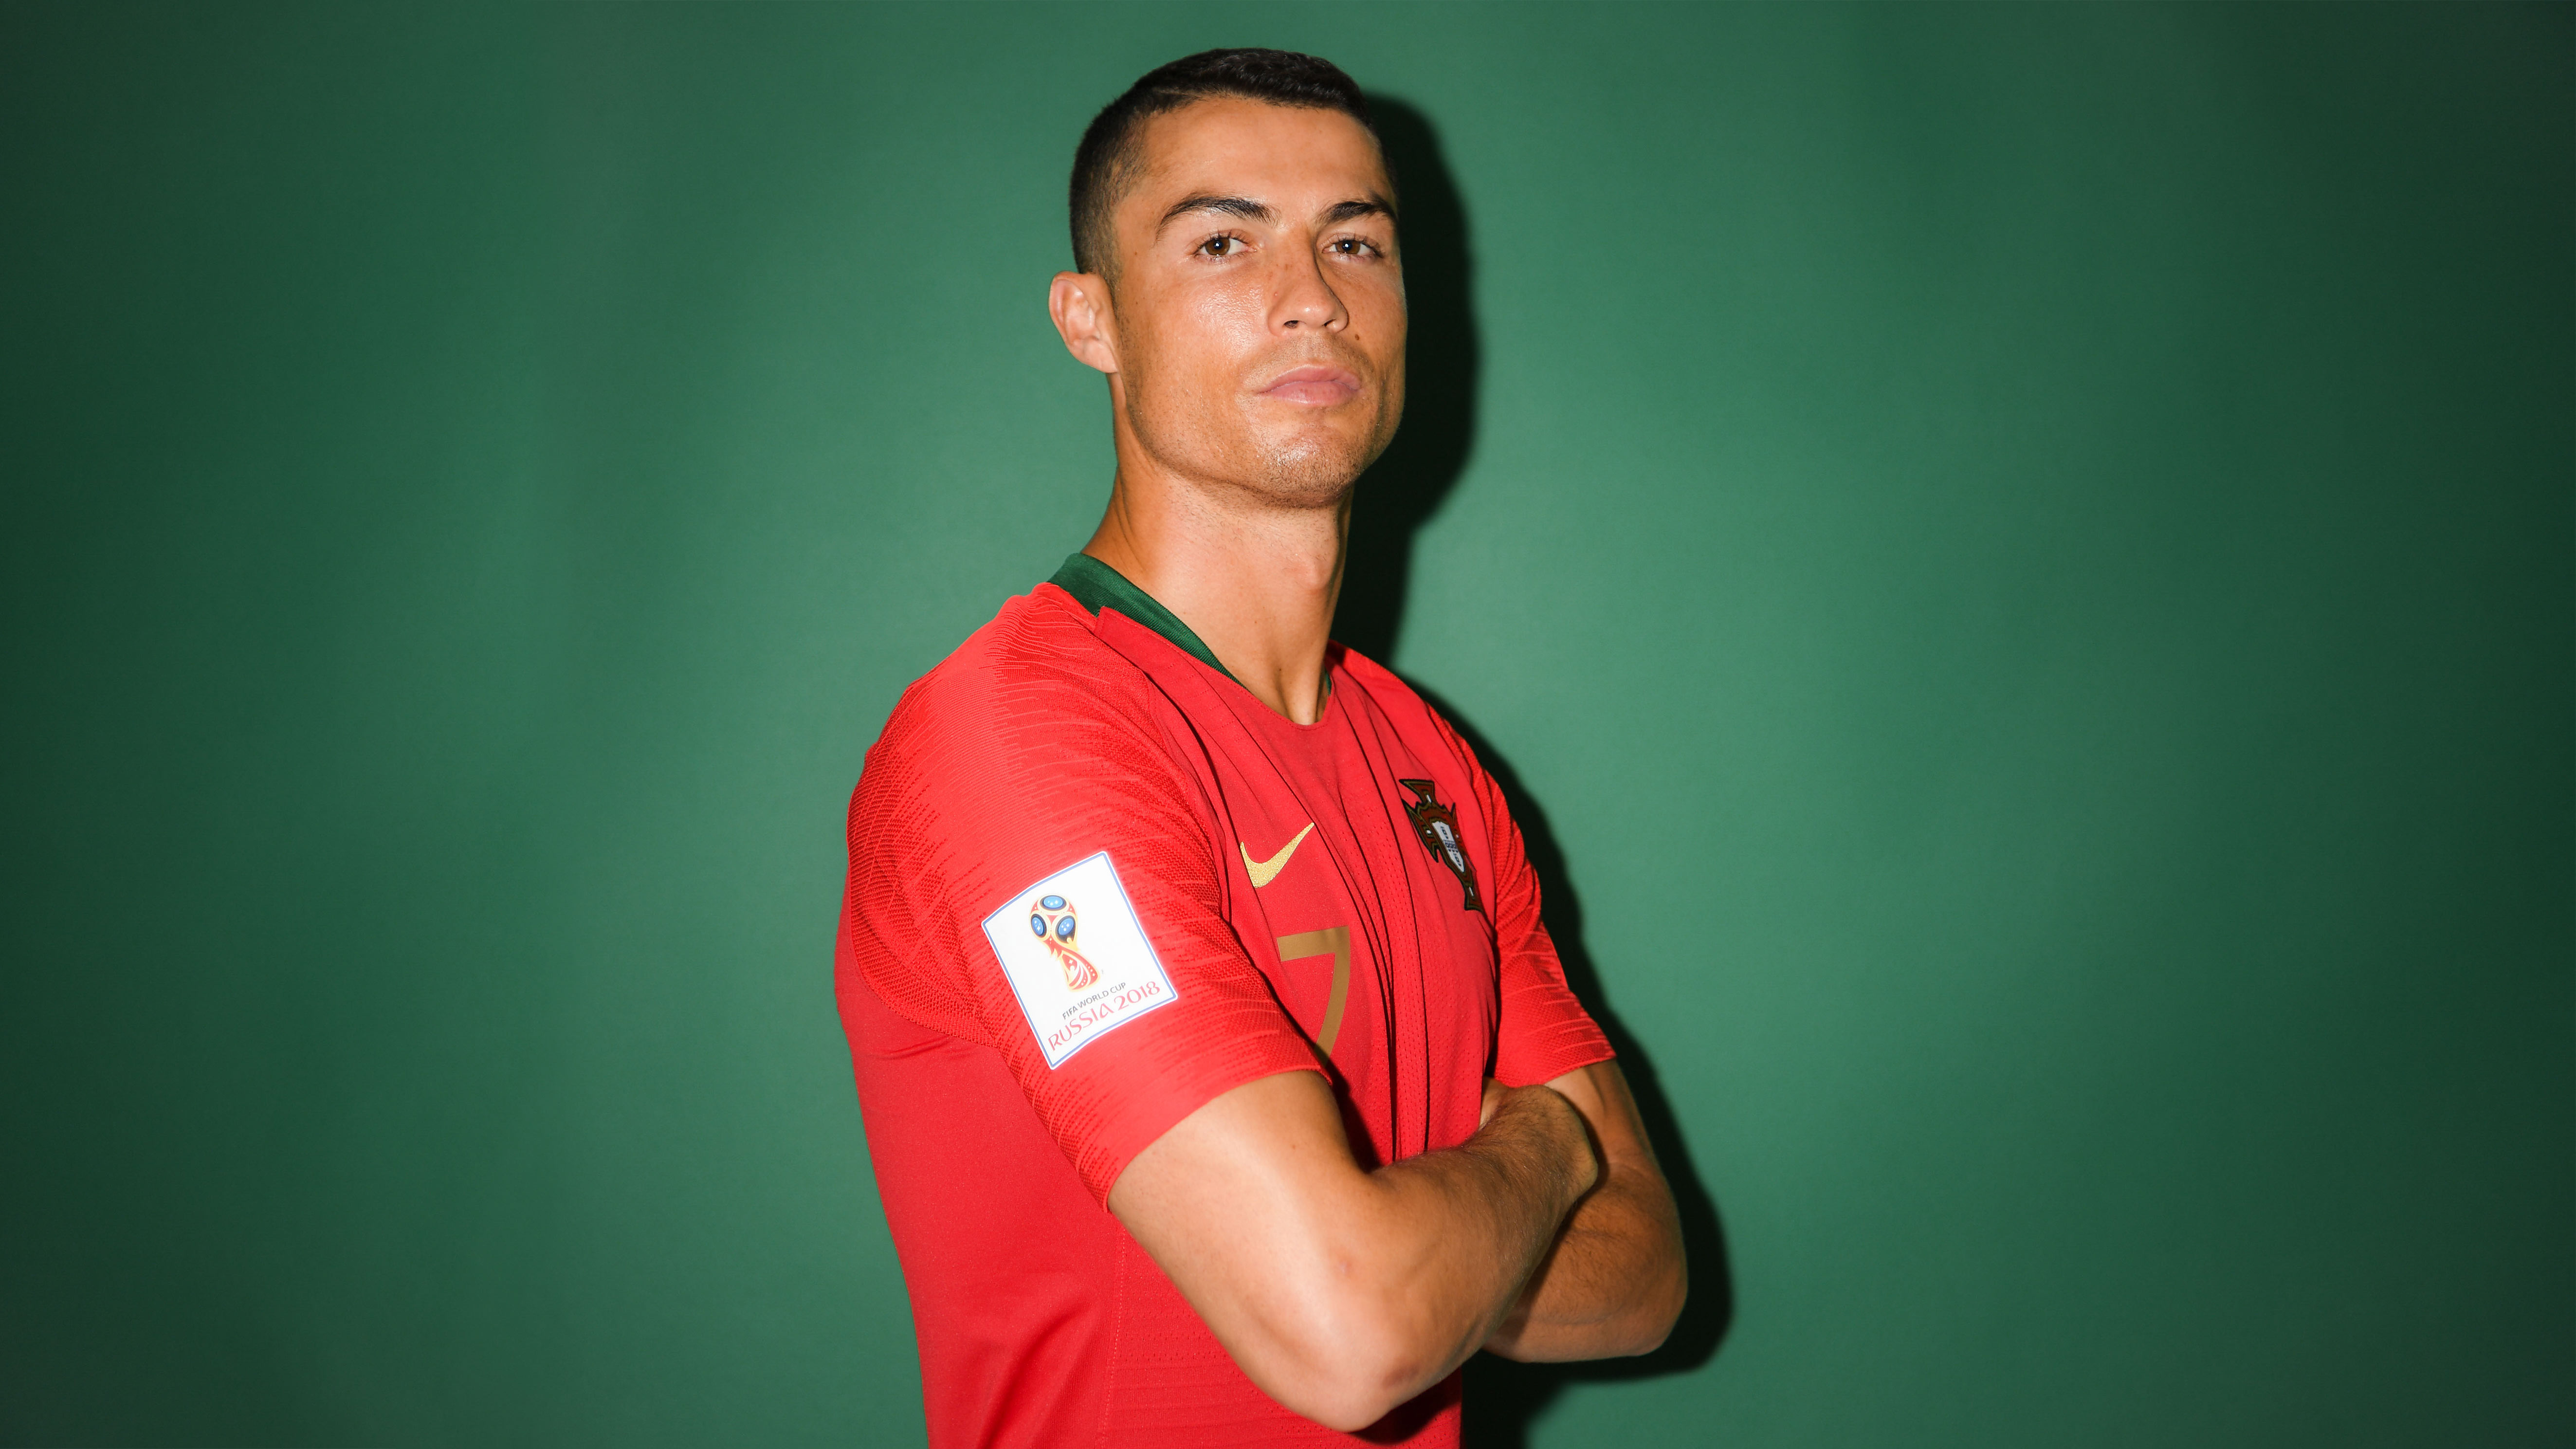 Cristiano Ronaldo FIFA 2018 Portrait Wallpaper, HD Sports 4K Wallpapers